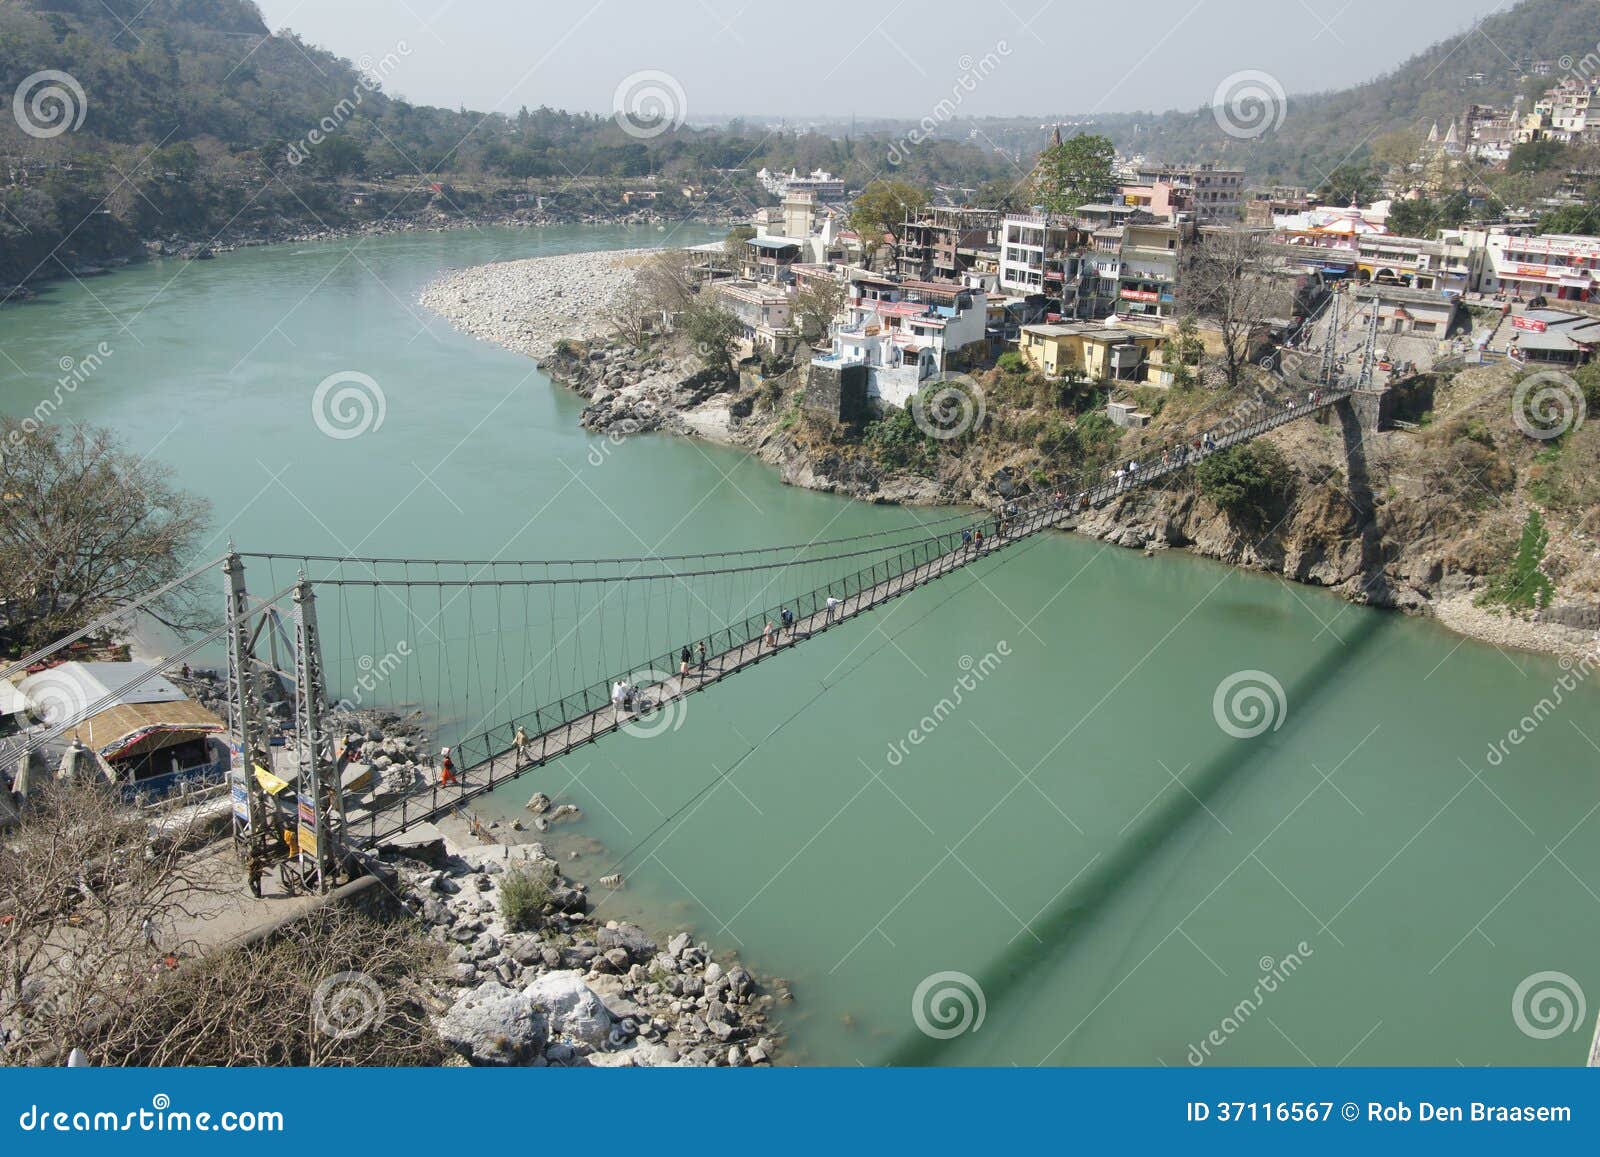 Hangbrug op Ganges, rishikesh. De hangbrug van Lukshmanjhoola op de rivier ganga/Ganges in de Hindoese heilige stad van Rishikesh India